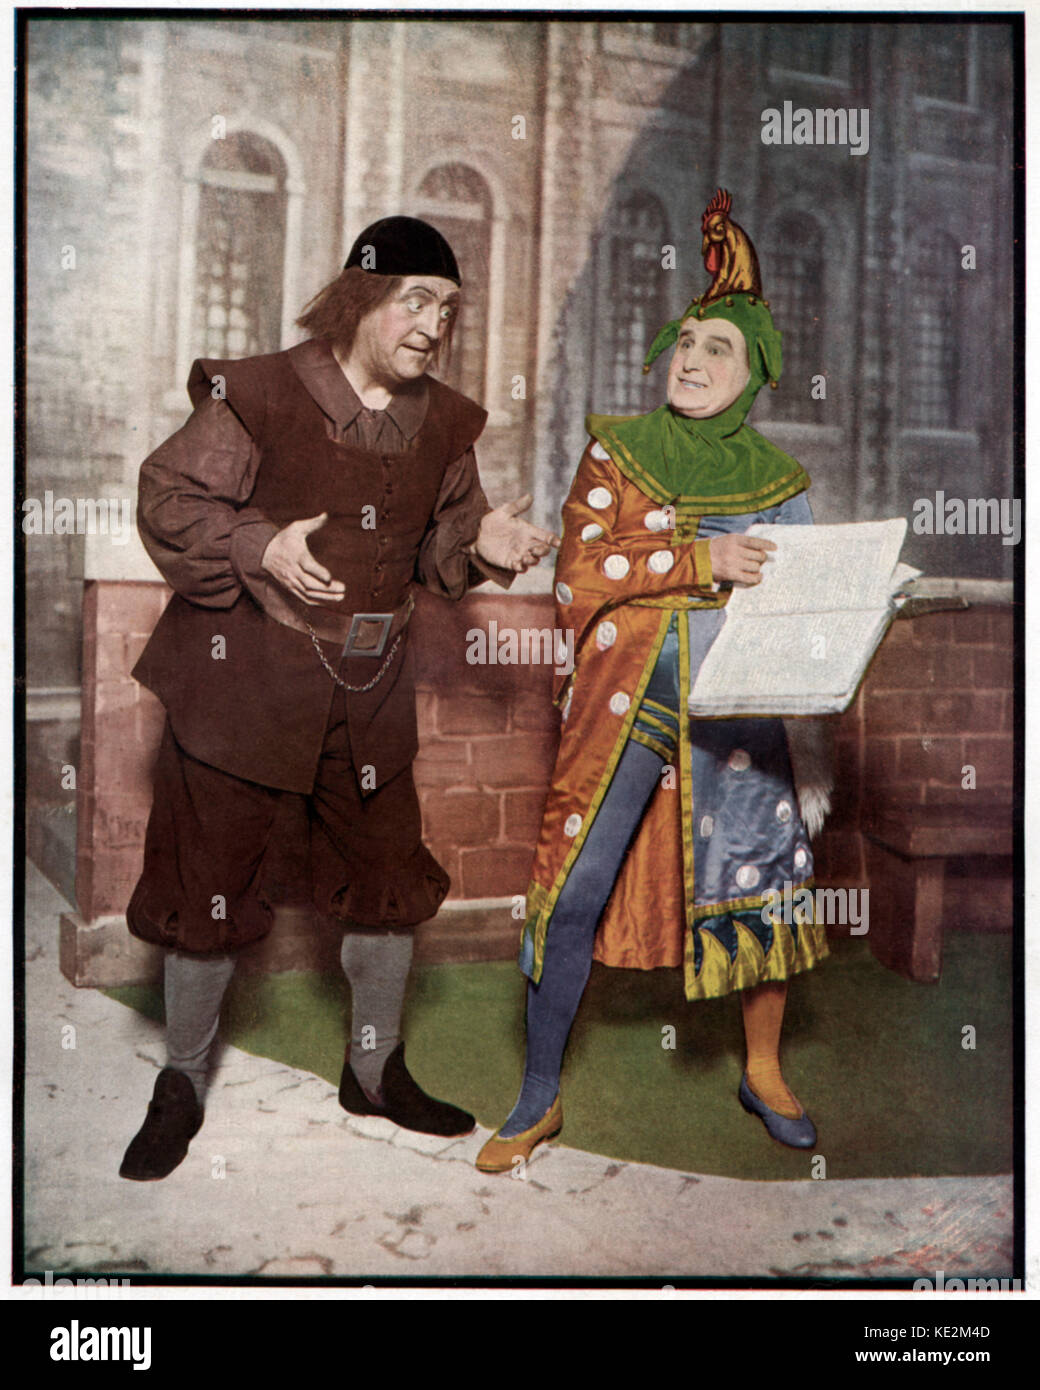 Gilbert & Sullivan's komische Operette "Die Yeomen der Guard' - Portrait von Leo Sheffield wie Wilfred der Gefängniswärter und Henry Lytton, wie Jack, Punkt. Akt II. "Und du mich qualifizieren als ein Narr?", fragt Wilfred von Jack Point. Der gefängniswärter ist bestrebt, die waggish Tendenzen, die er glaubt, die er besitzt, zu geben. D'Oyly Carte Opera Company, Saison 1926. Librettisten William S. Gilbert (1836-1911) und Komponisten Arthur Sullivan (1842 - 1900). Stockfoto